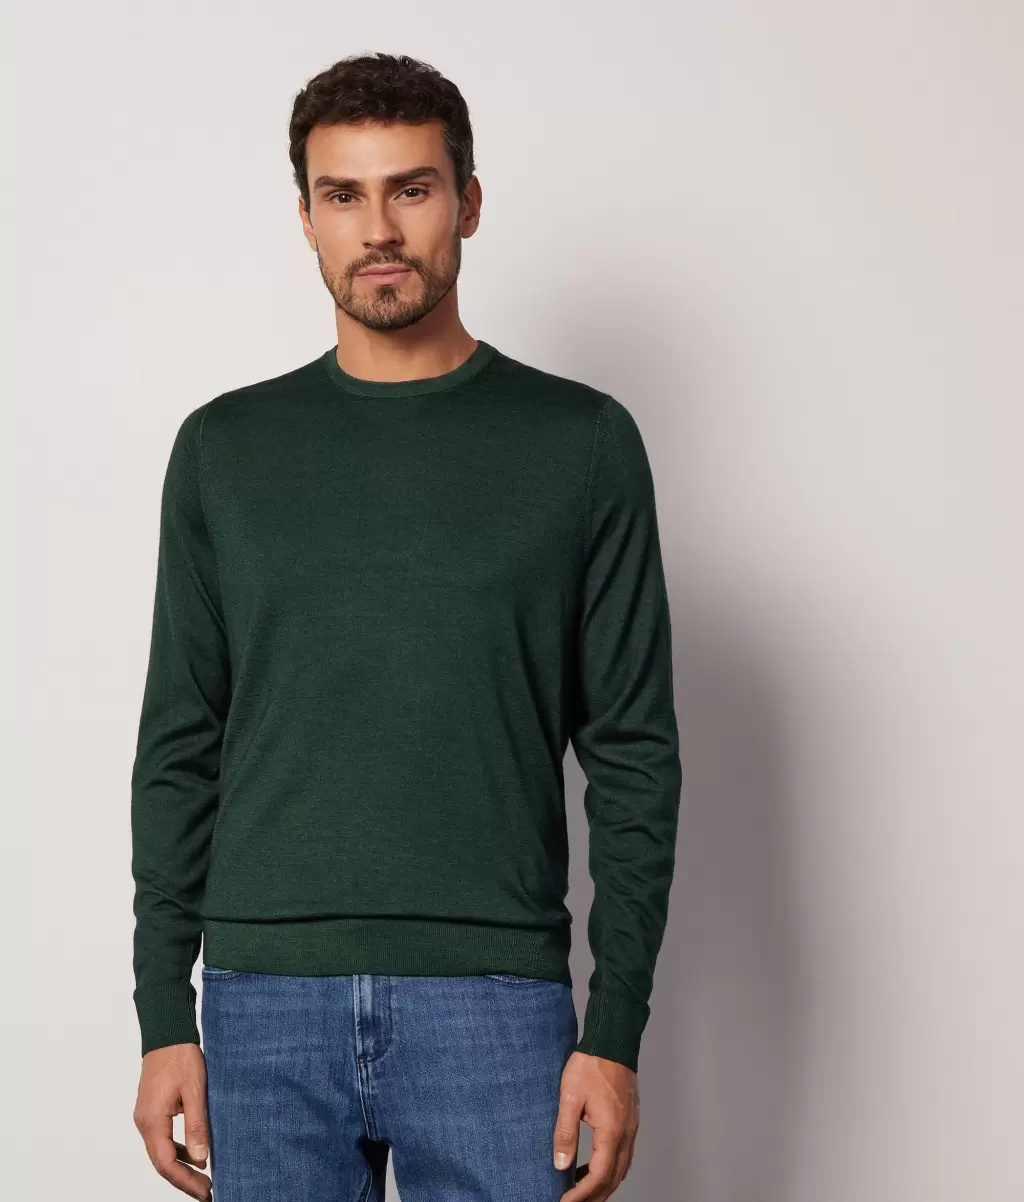 Falconeri Swetry Z Okrągłym Dekoltem Mężczyzna Dark_Green Pulower Z Kaszmiru Ultrafine